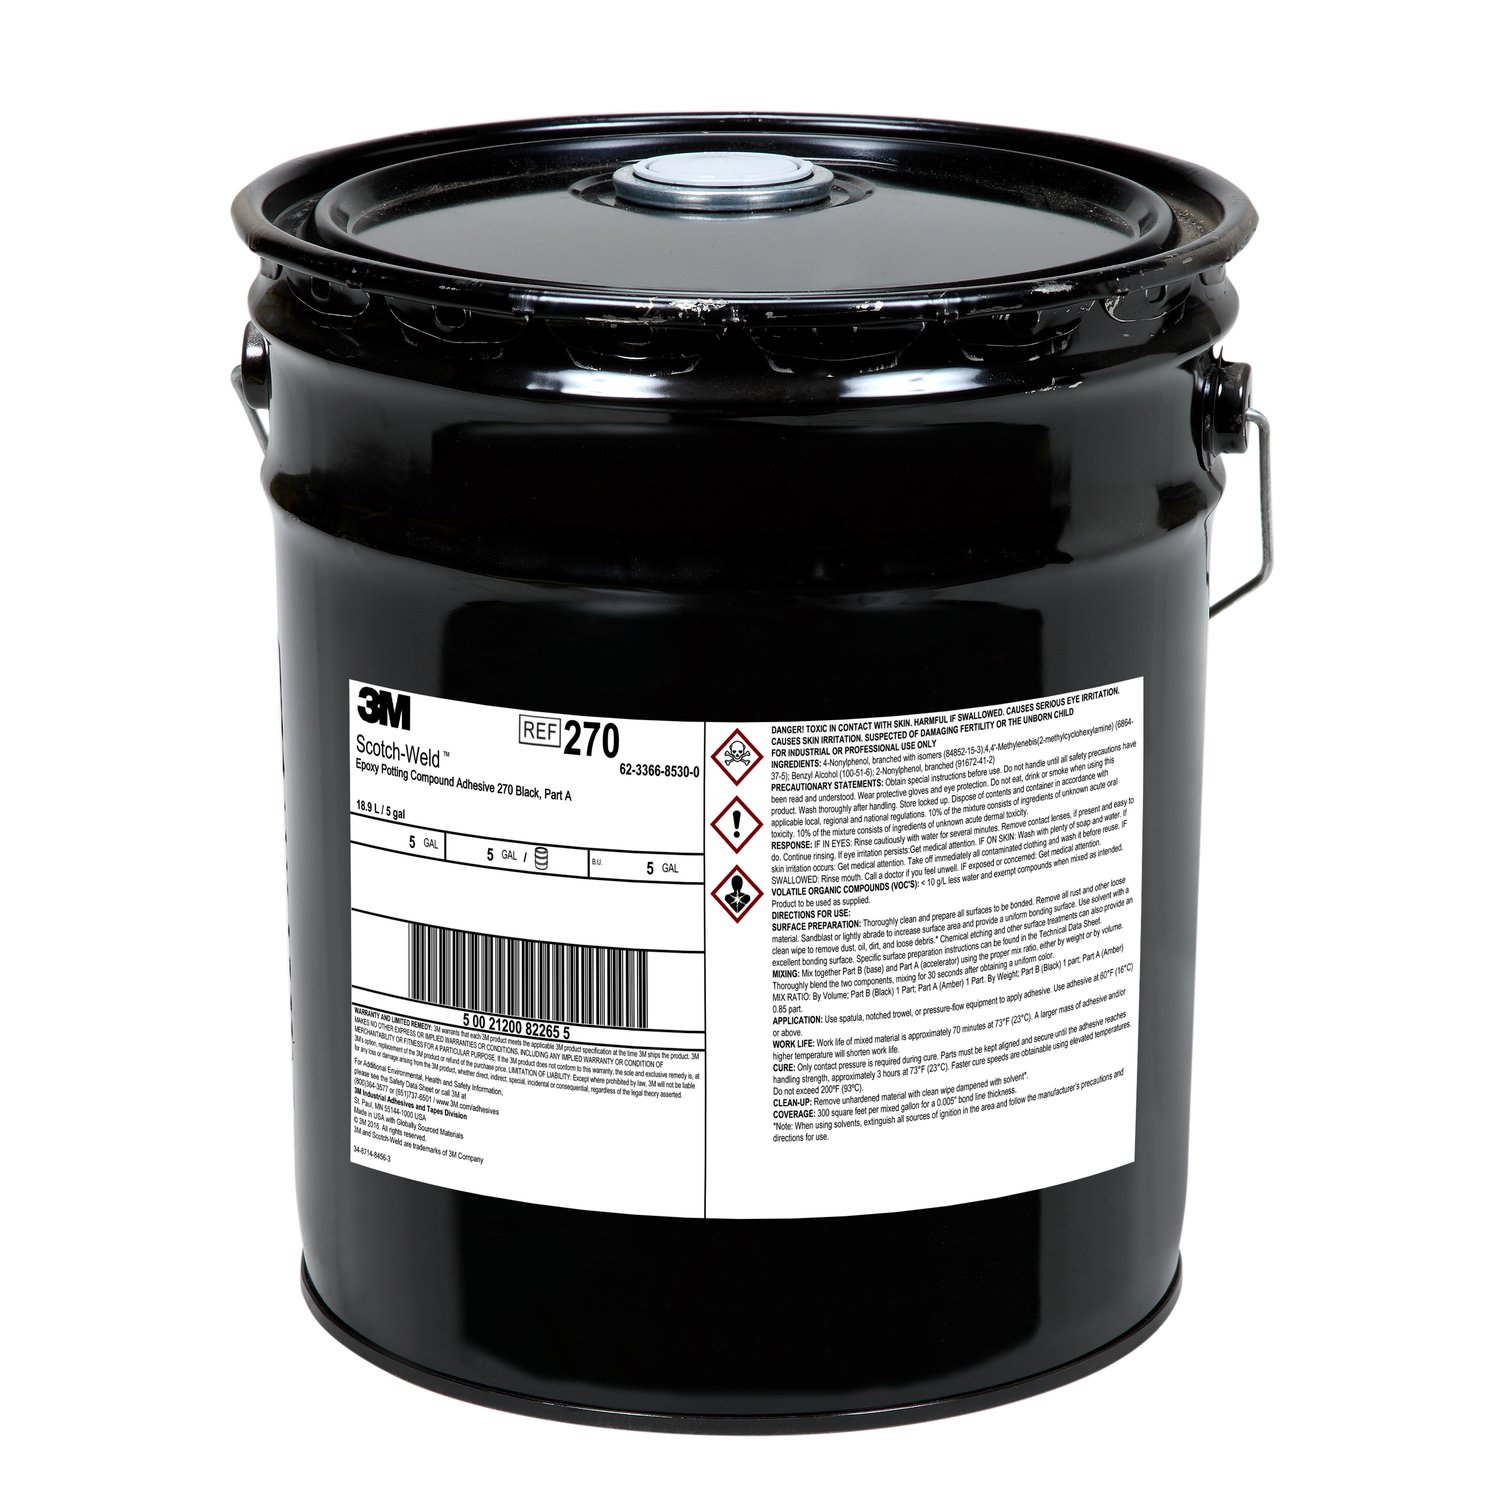 7000046463 - 3M Scotch-Weld Epoxy Potting Compound 270, Black, Part A, 5 Gallon
(Pail), 1 Can/Drum